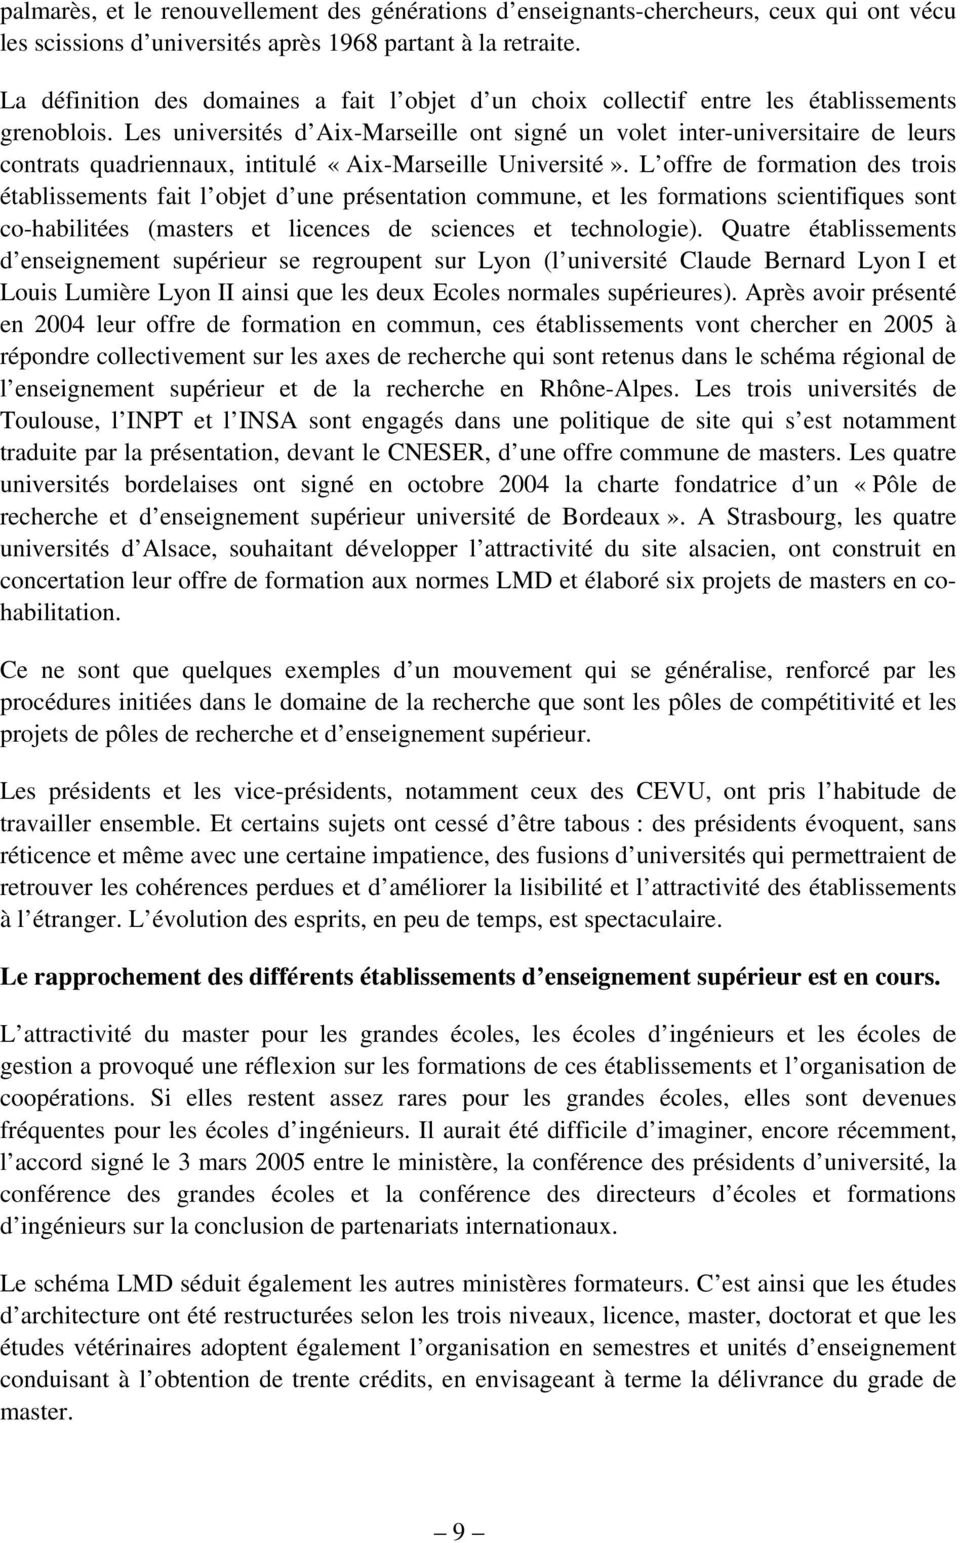 Les universités d Aix-Marseille ont signé un volet inter-universitaire de leurs contrats quadriennaux, intitulé «Aix-Marseille Université».